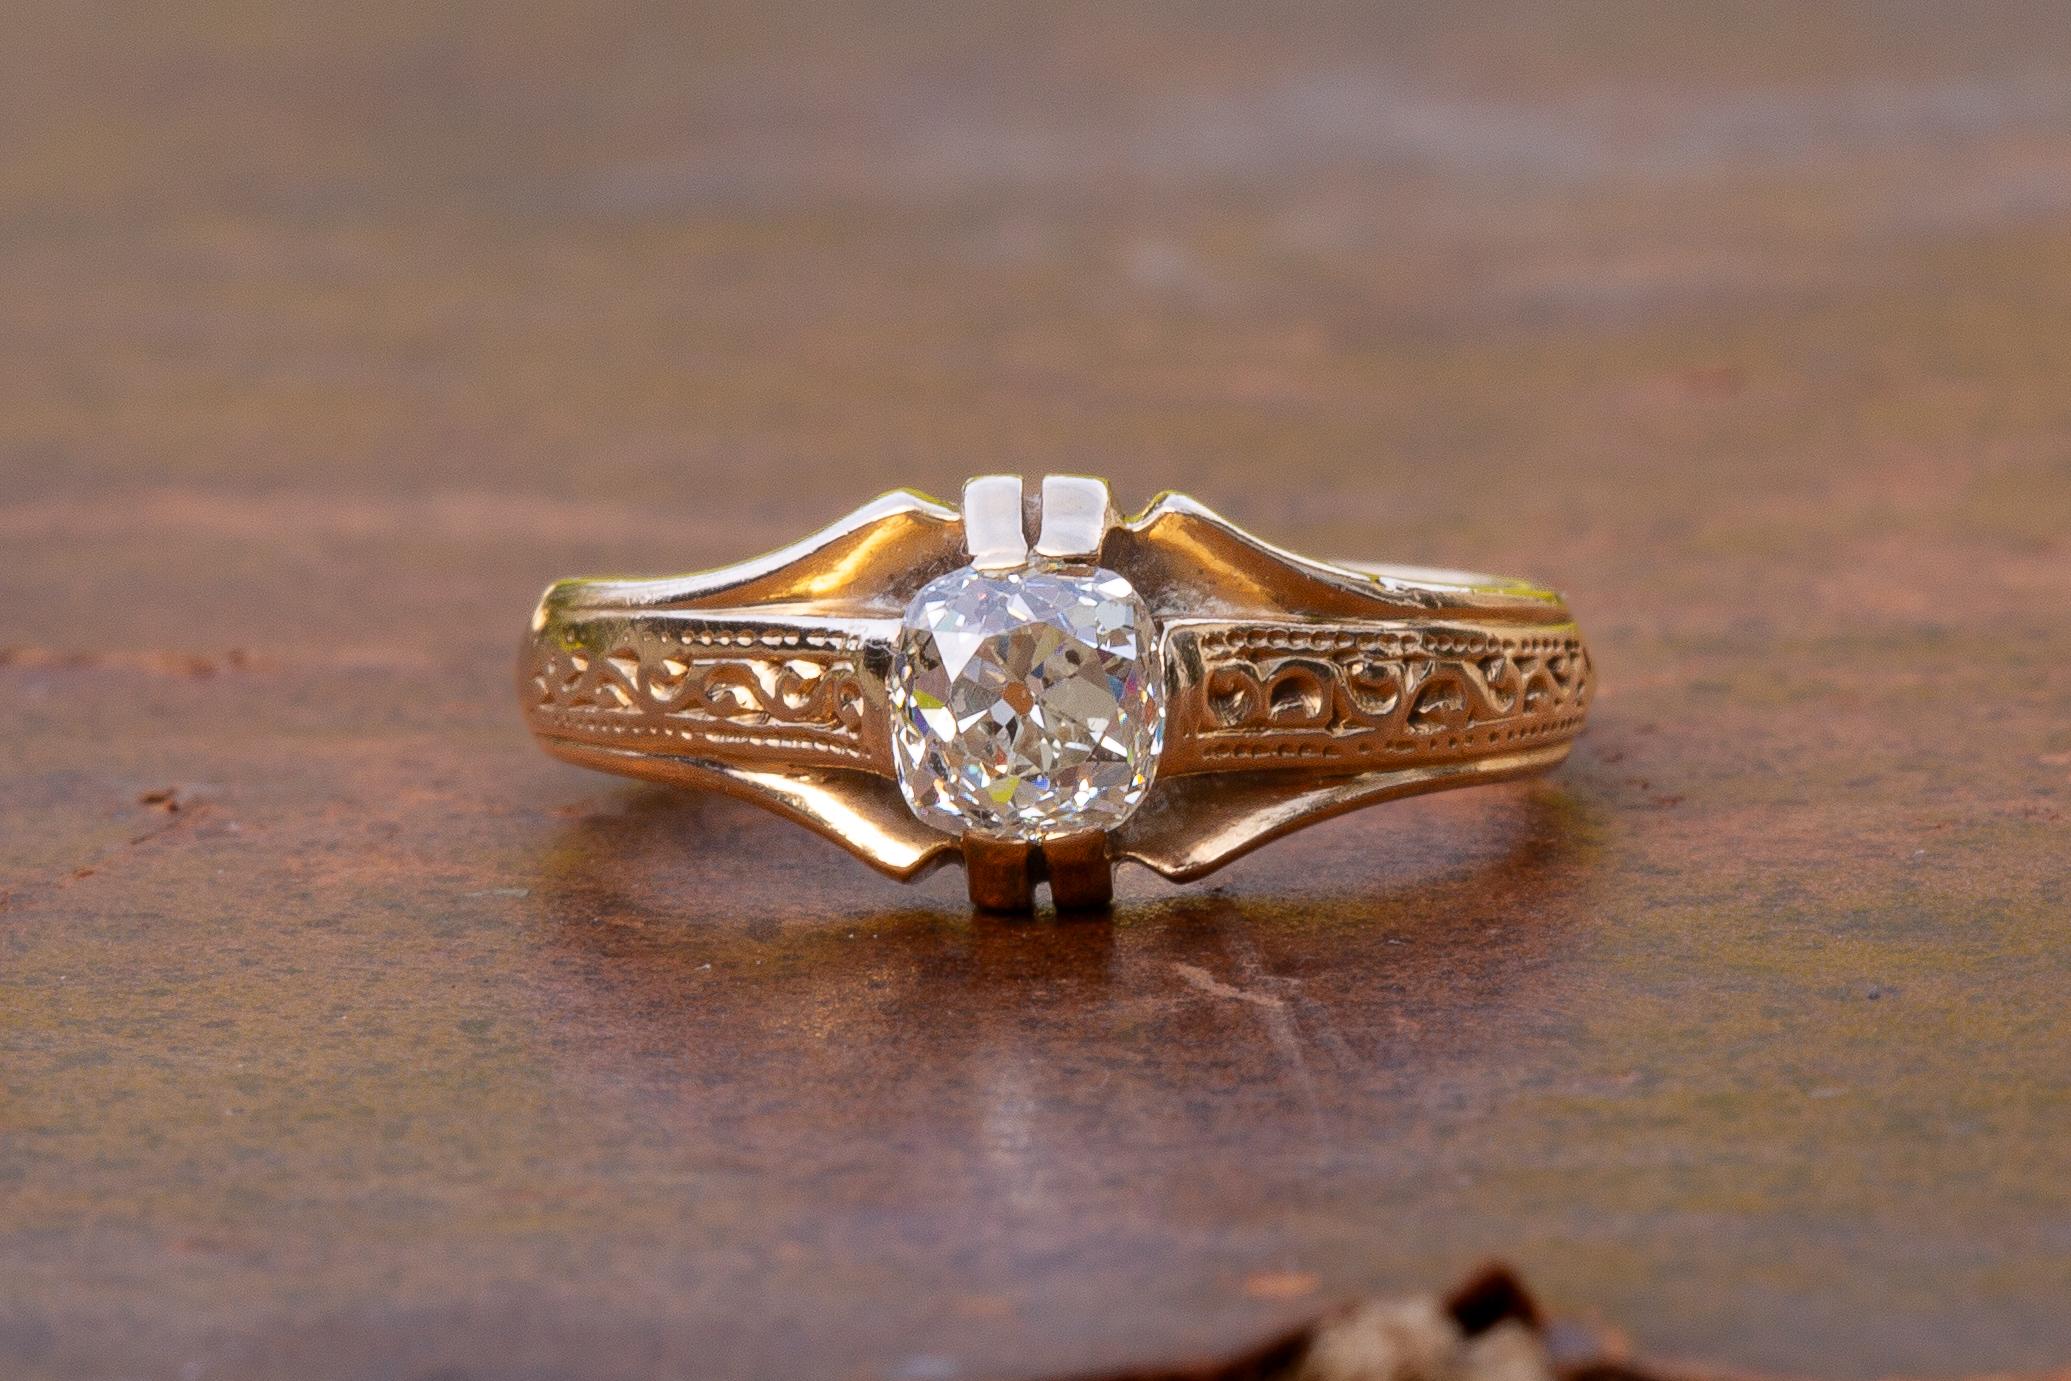 Este precioso solitario de diamante antiguo se fabricó en Austro-Hungría, hacia 1900. El anillo está engastado con un diamante de talla cojín fantásticamente brillante y centelleante, que pesa 0,65 ct.

El anillo está fabricado en oro macizo de 14